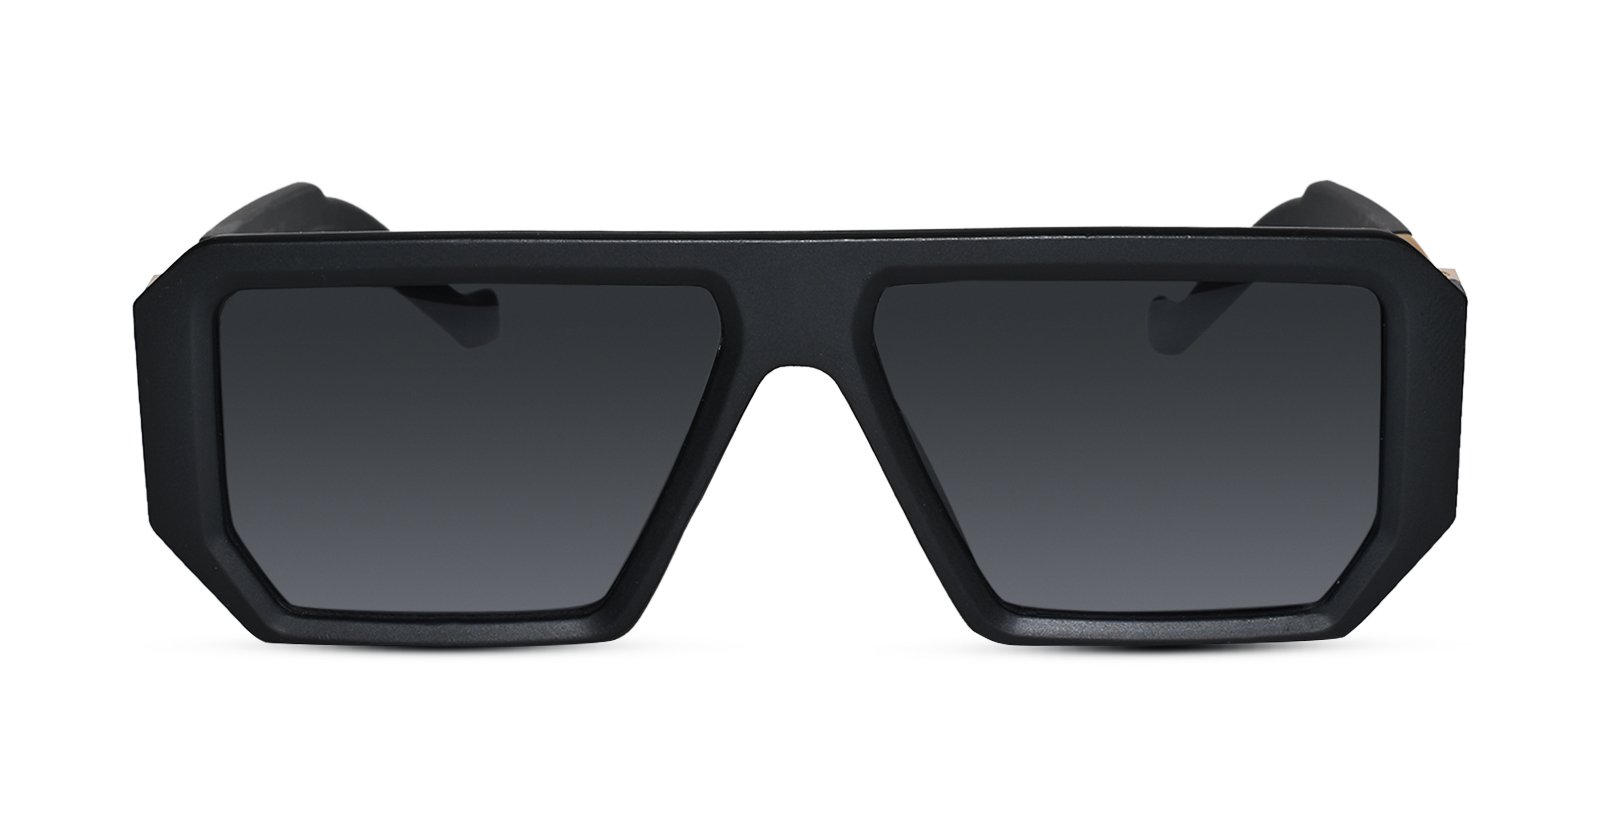 Designer Retro Black Sunglasses